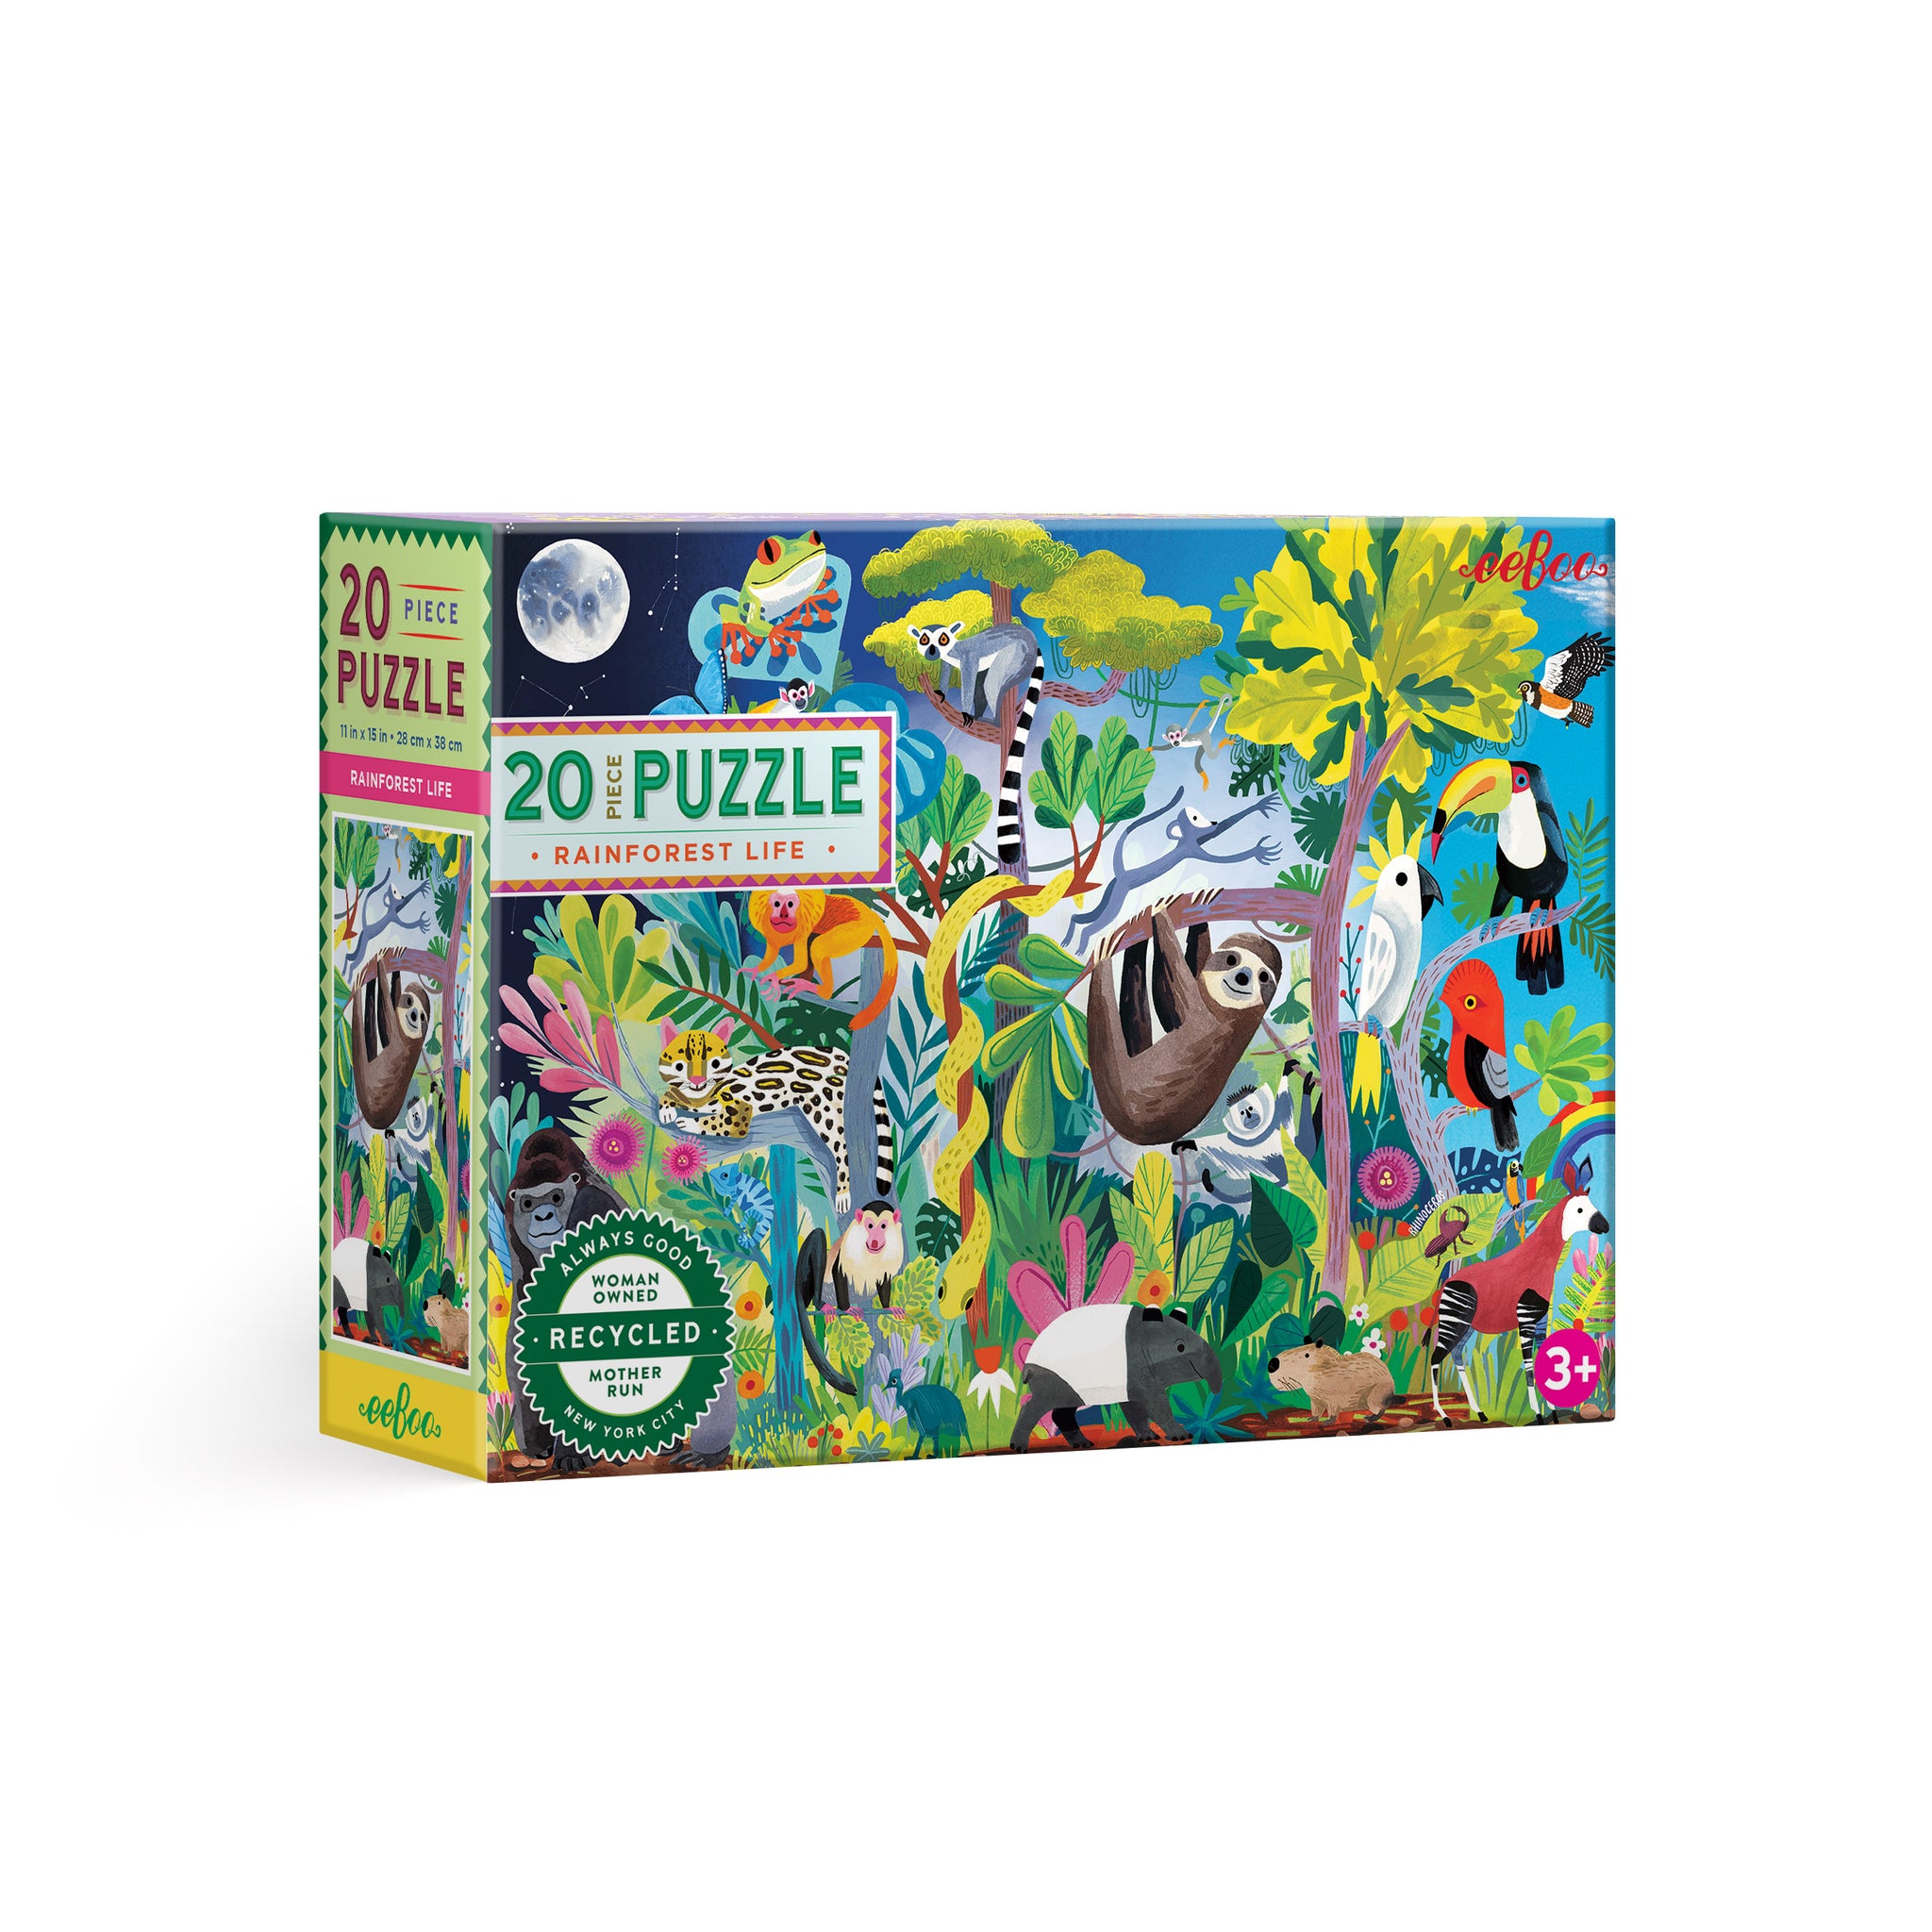 20 piece puzzle | rainforest life